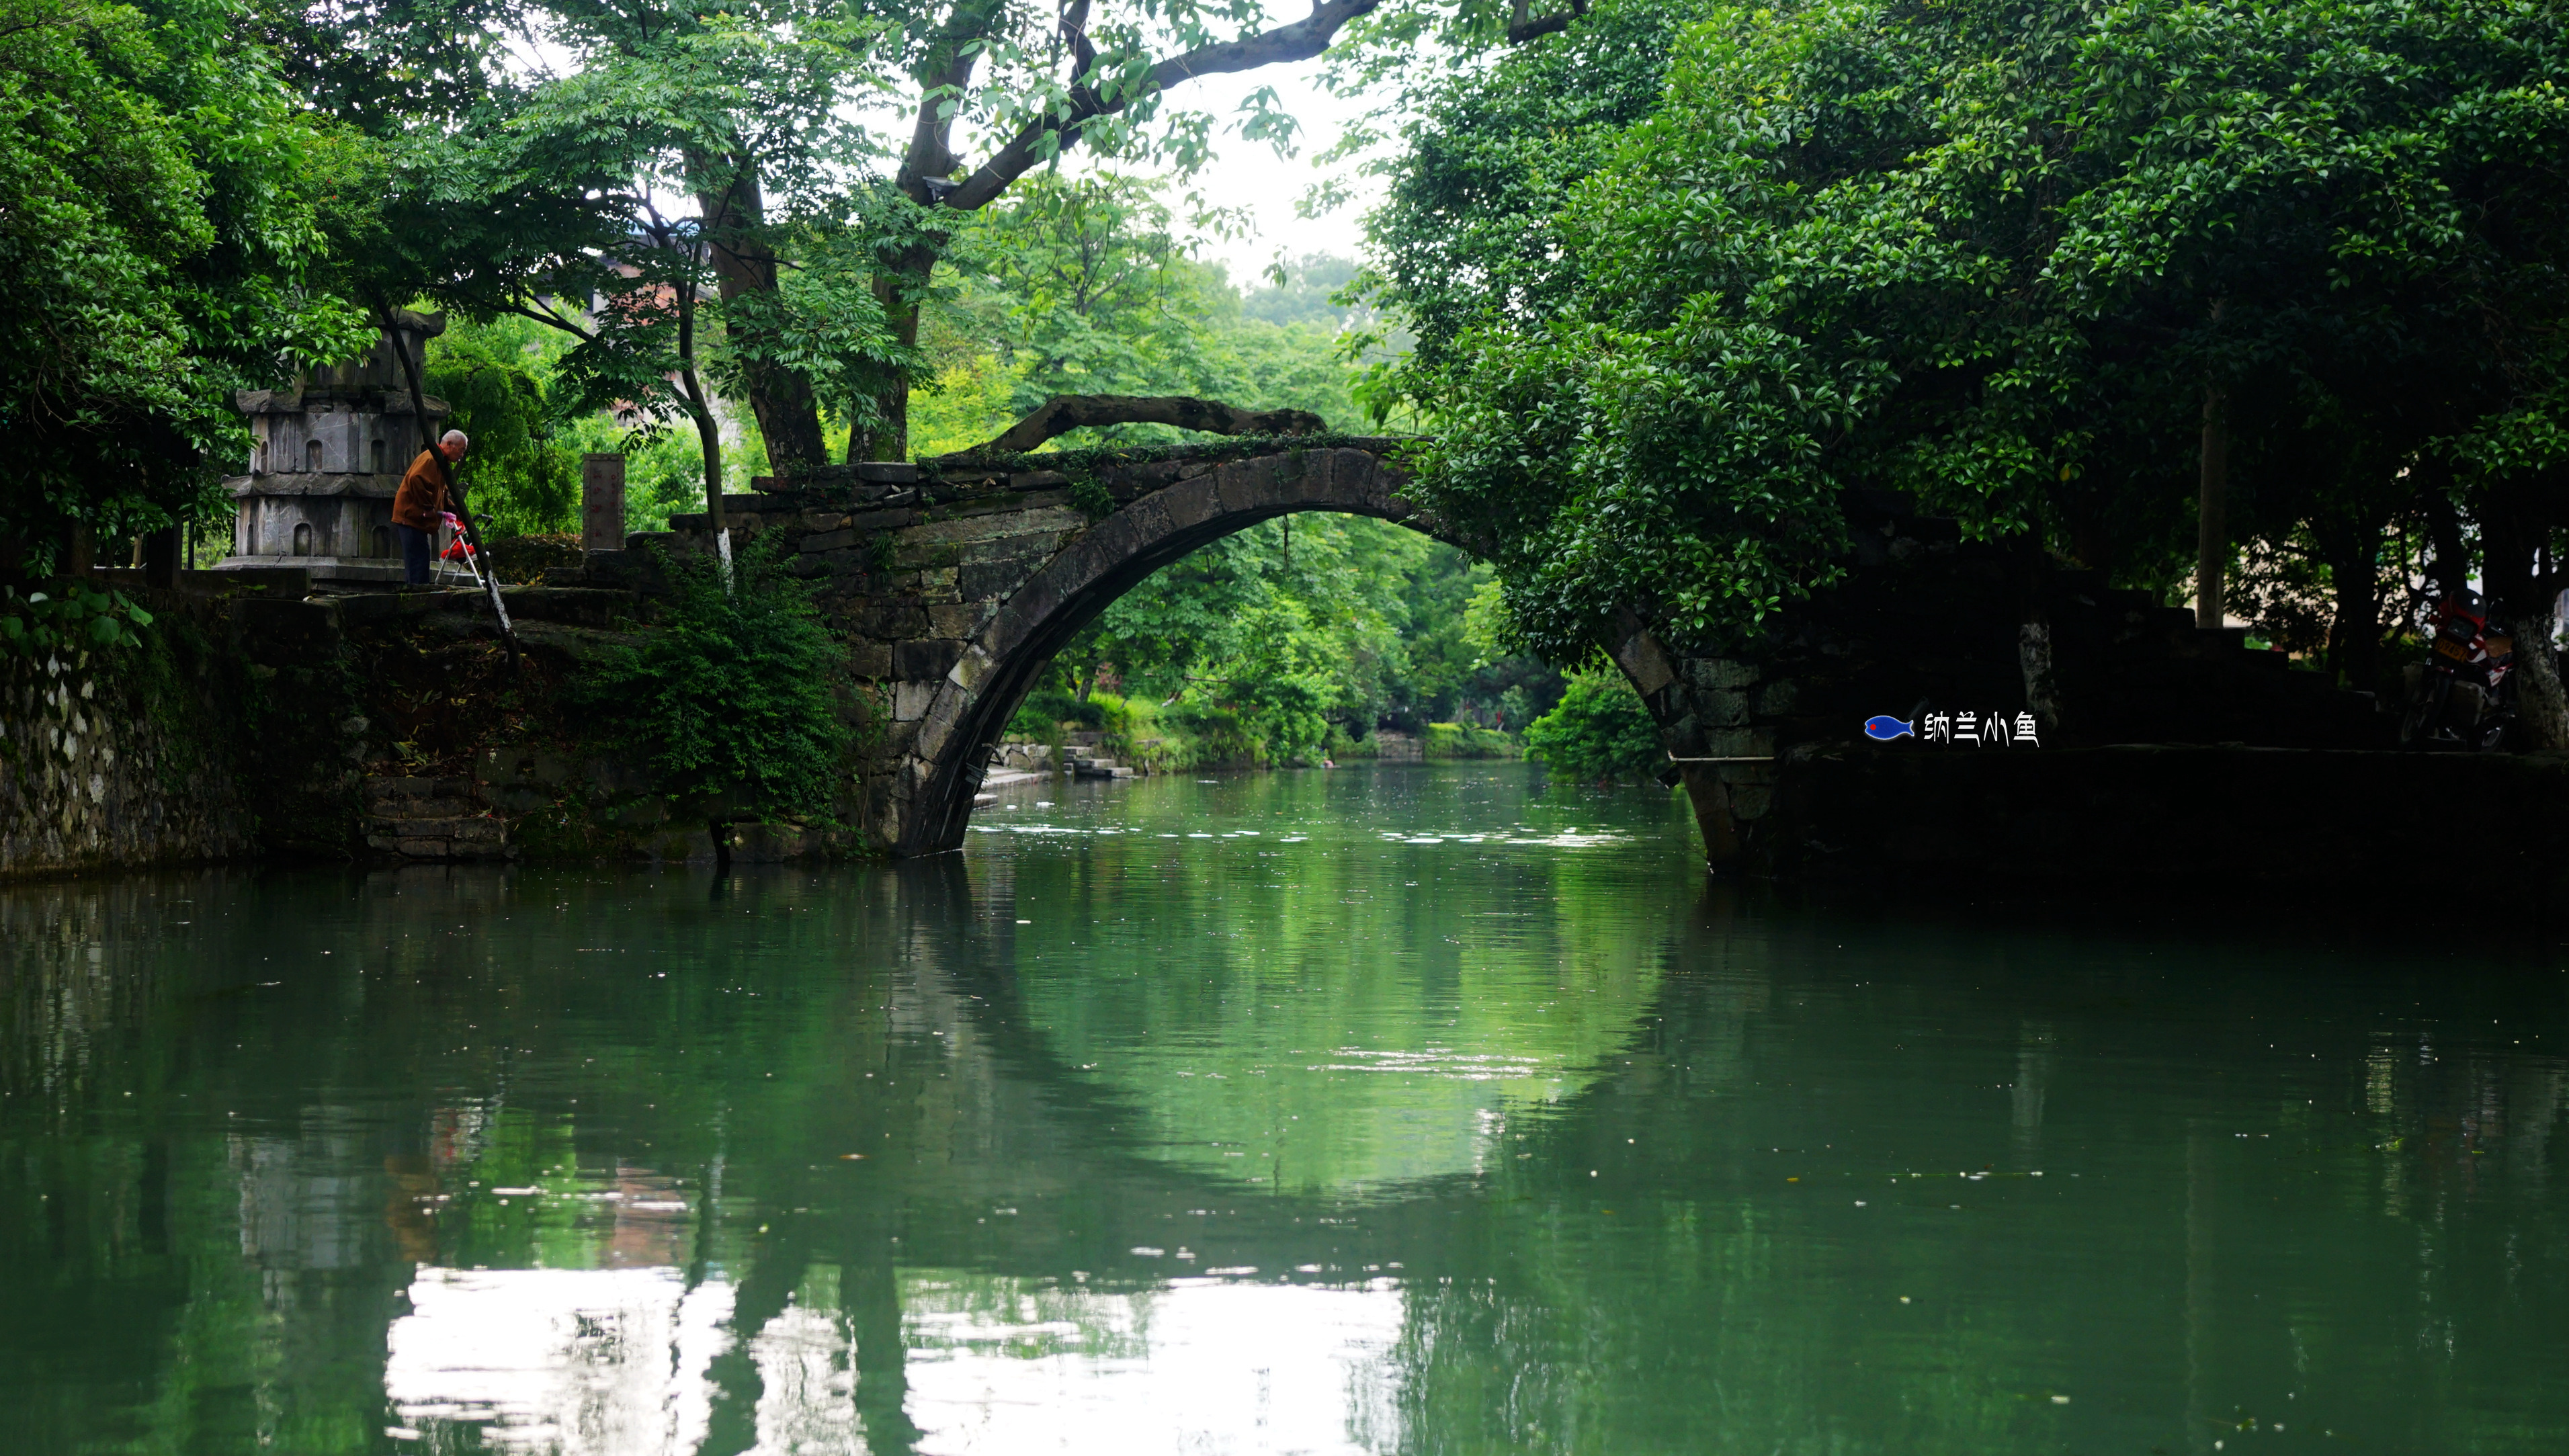 原创探访广西兴安灵渠 2200多年前修建的水利工程至今仍发挥作用!